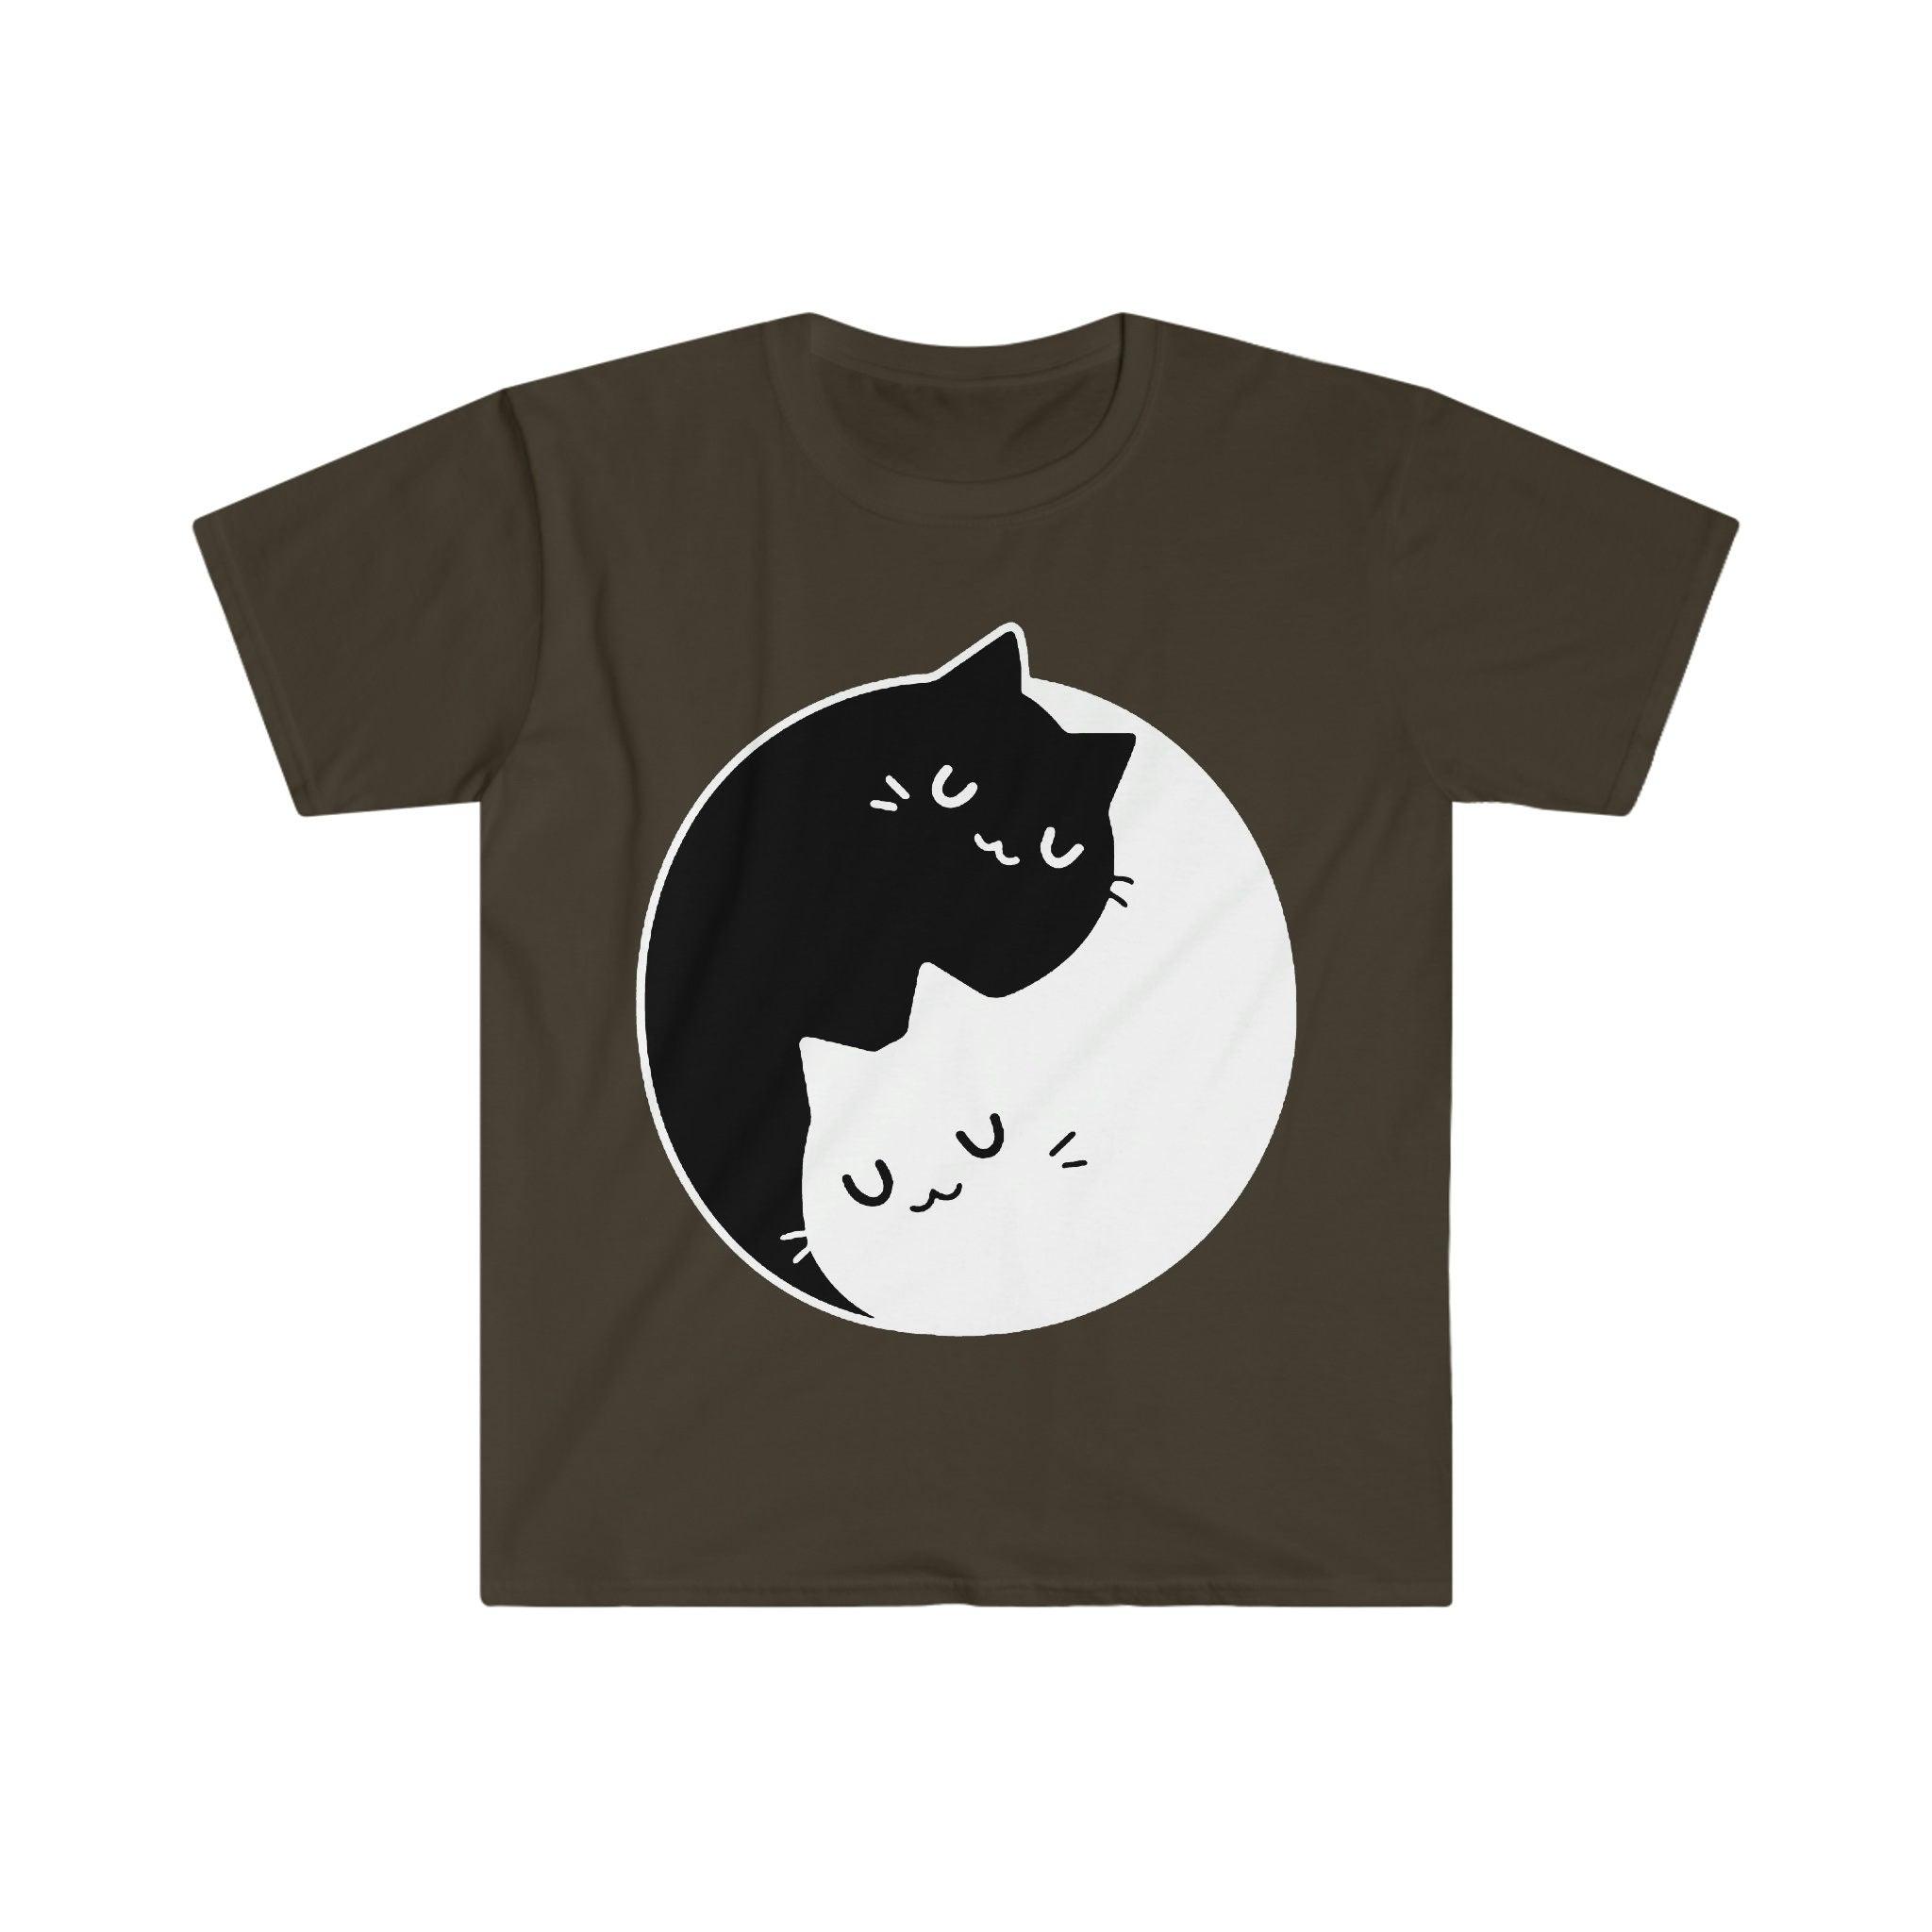 Yin Yang Cats T-Shirts , Yin Yang Duality || Yin Yang Cats || Perfect Gift - S M L Xl - Ladies, Men Unisex || Bff Couple Gift Ideas,Cat Mom Tee, tees - plusminusco.com